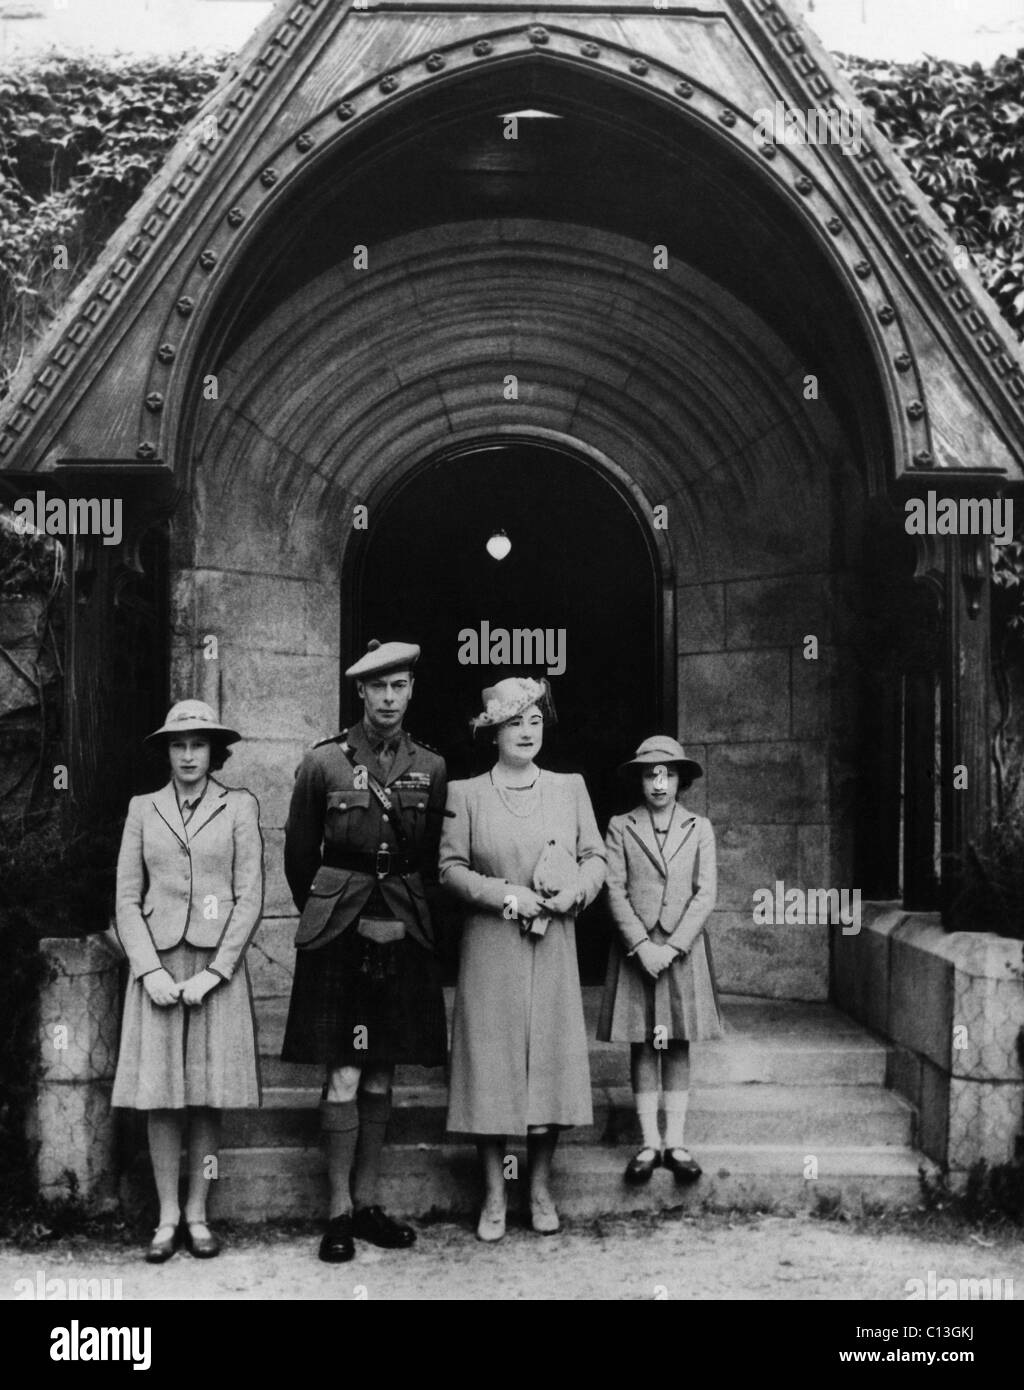 Famiglia Reale Britannica. Da sinistra: Futuro British Queen la principessa Elisabetta, British King George VI, British Queen Elizabeth (futura regina madre), futuro Contessa di Snowdon Principessa Margaret, Scozia, circa primi 1940s. Foto Stock